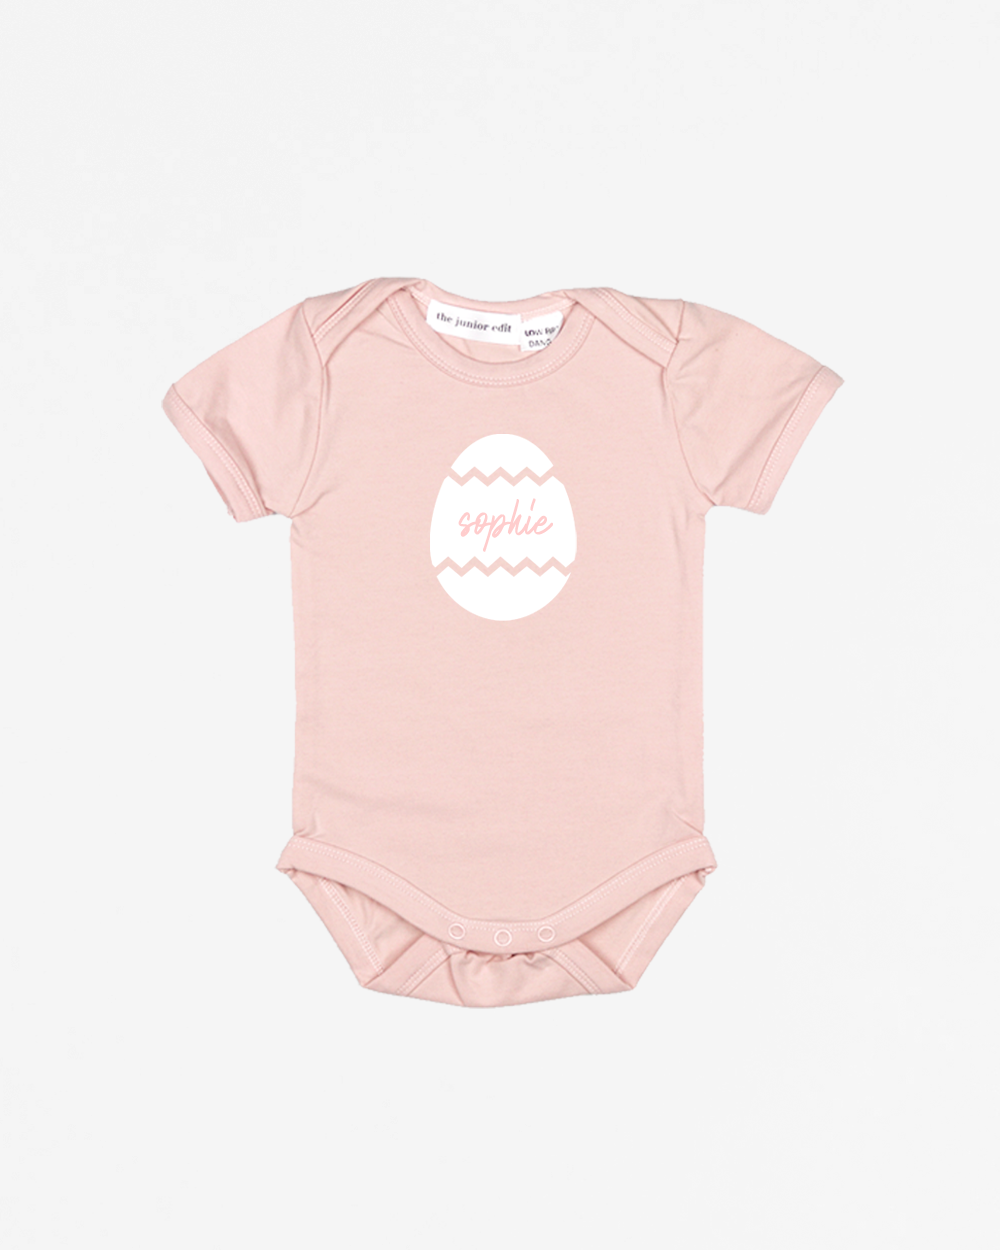 Name Signature Easter Egg | Bodysuit Short Sleeve